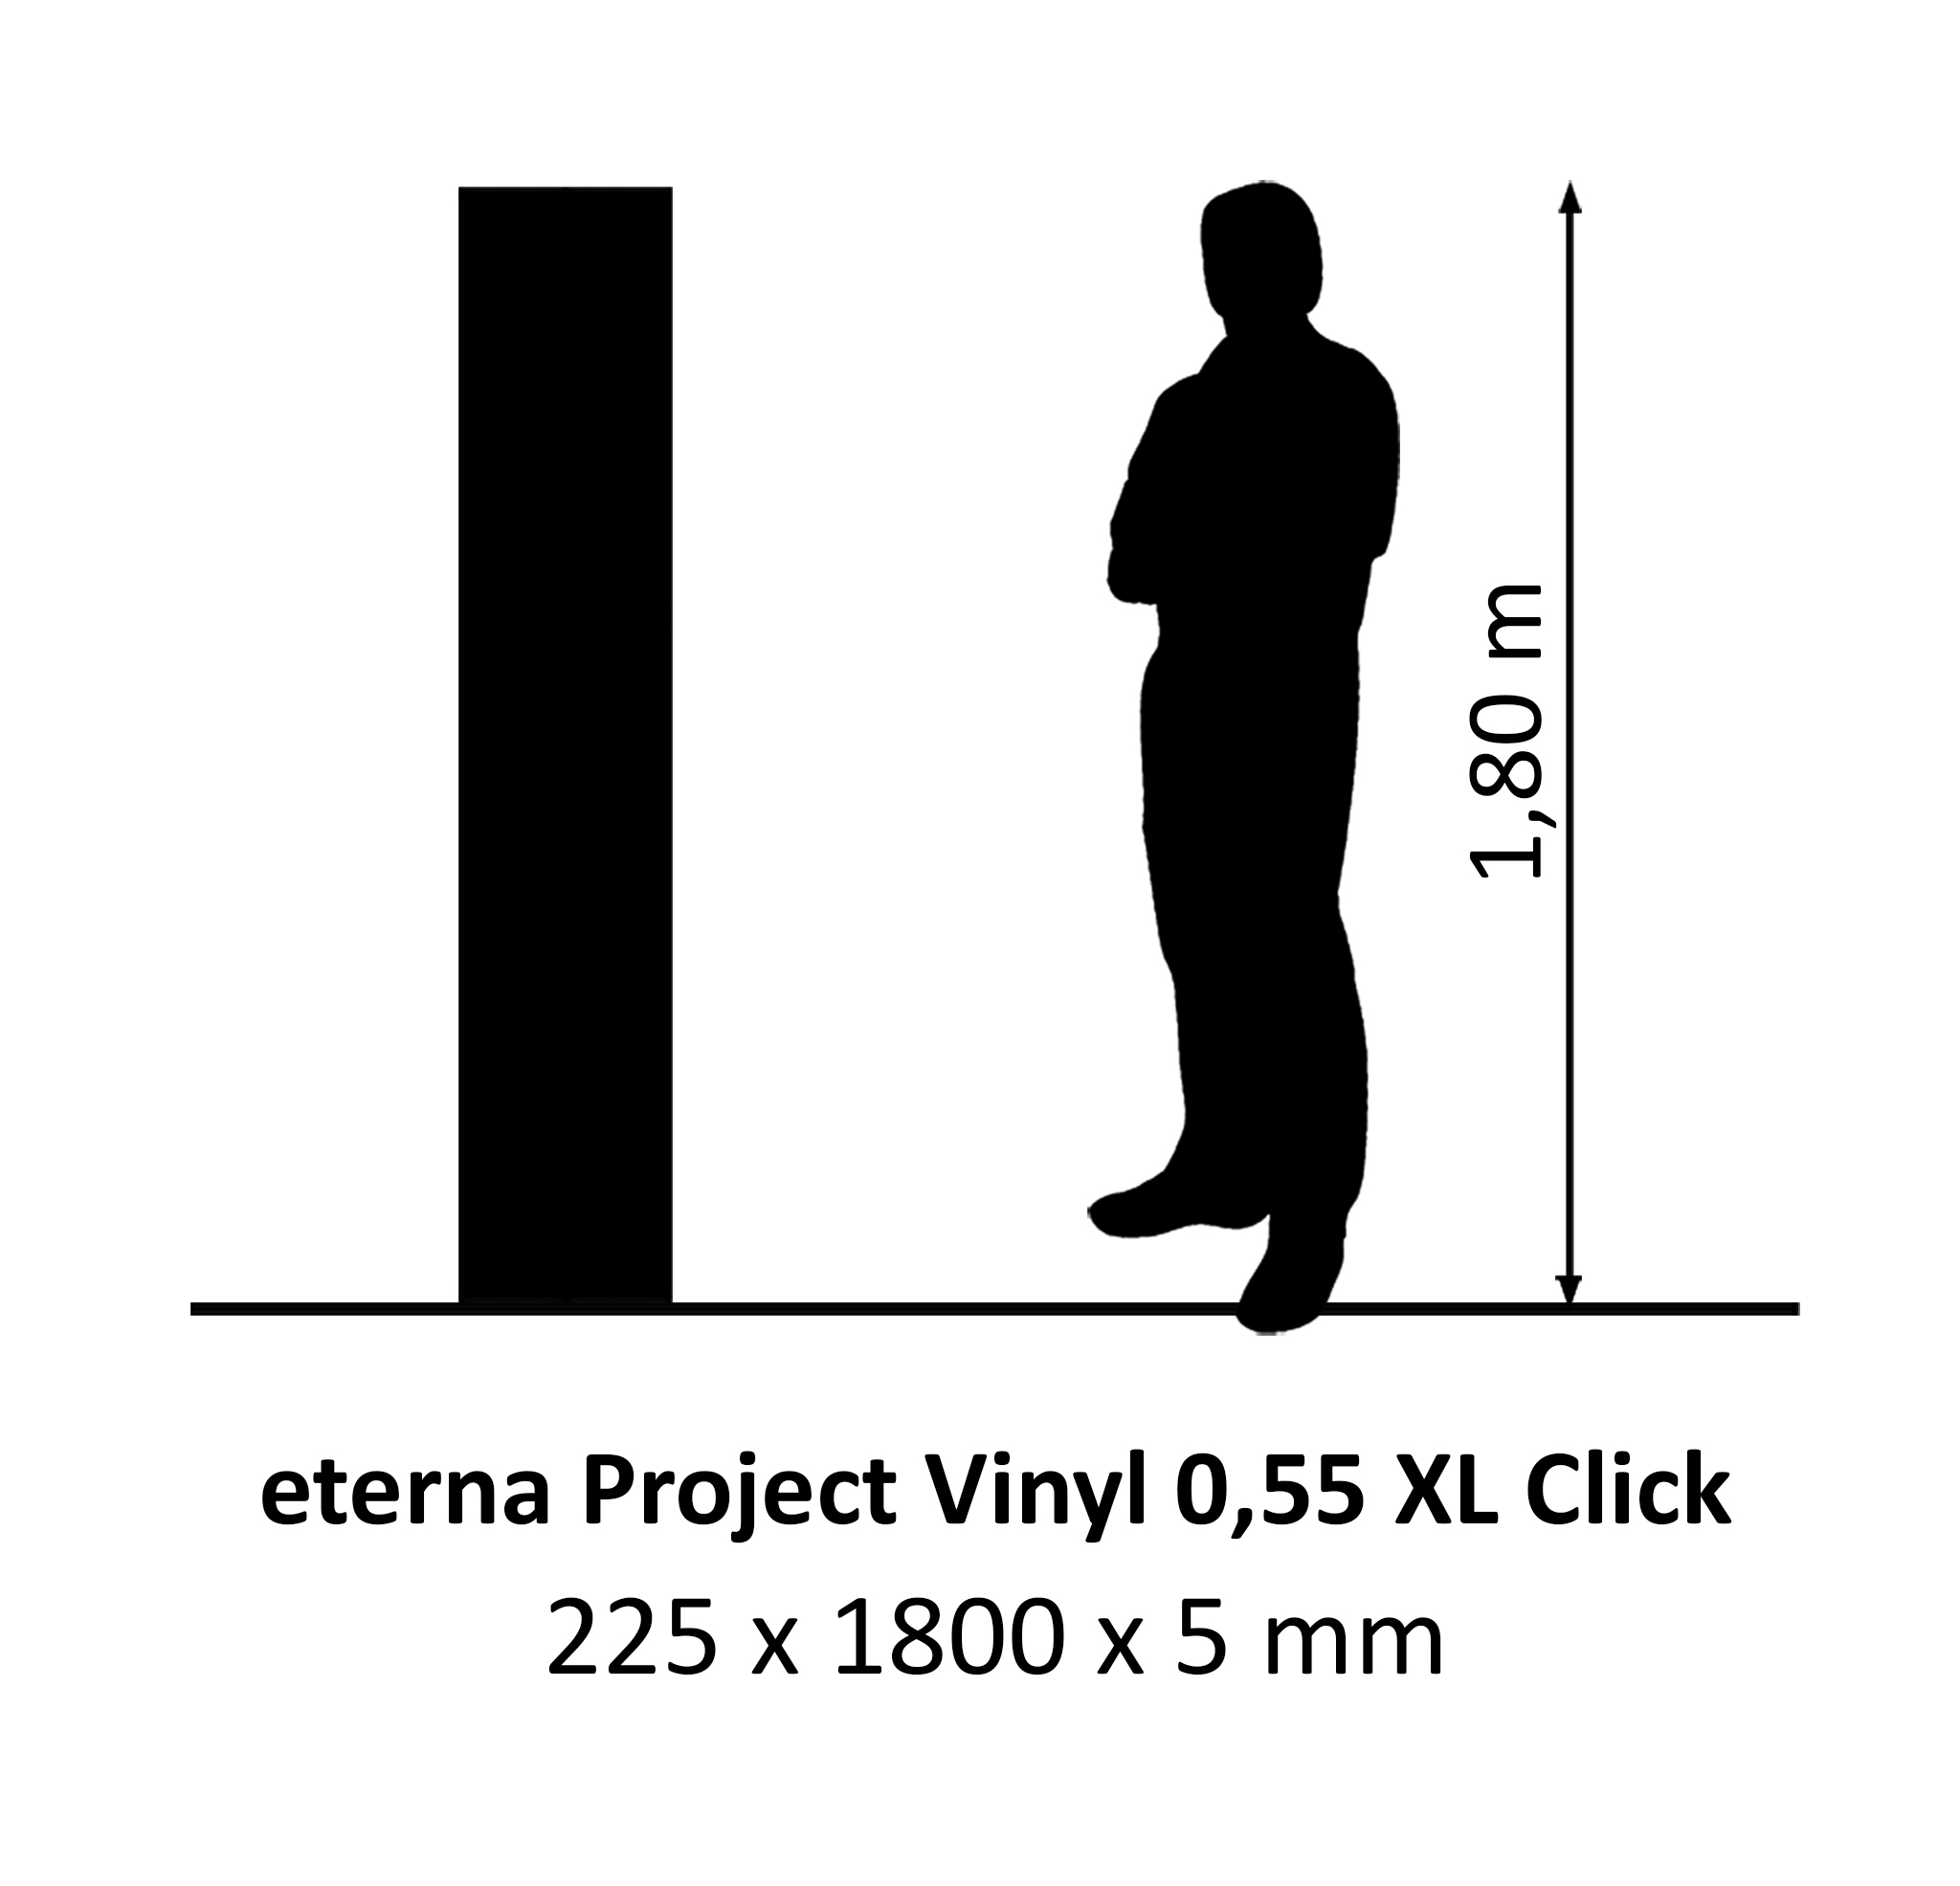 eterna Project Vinyl Pure Oak 0,55 XL